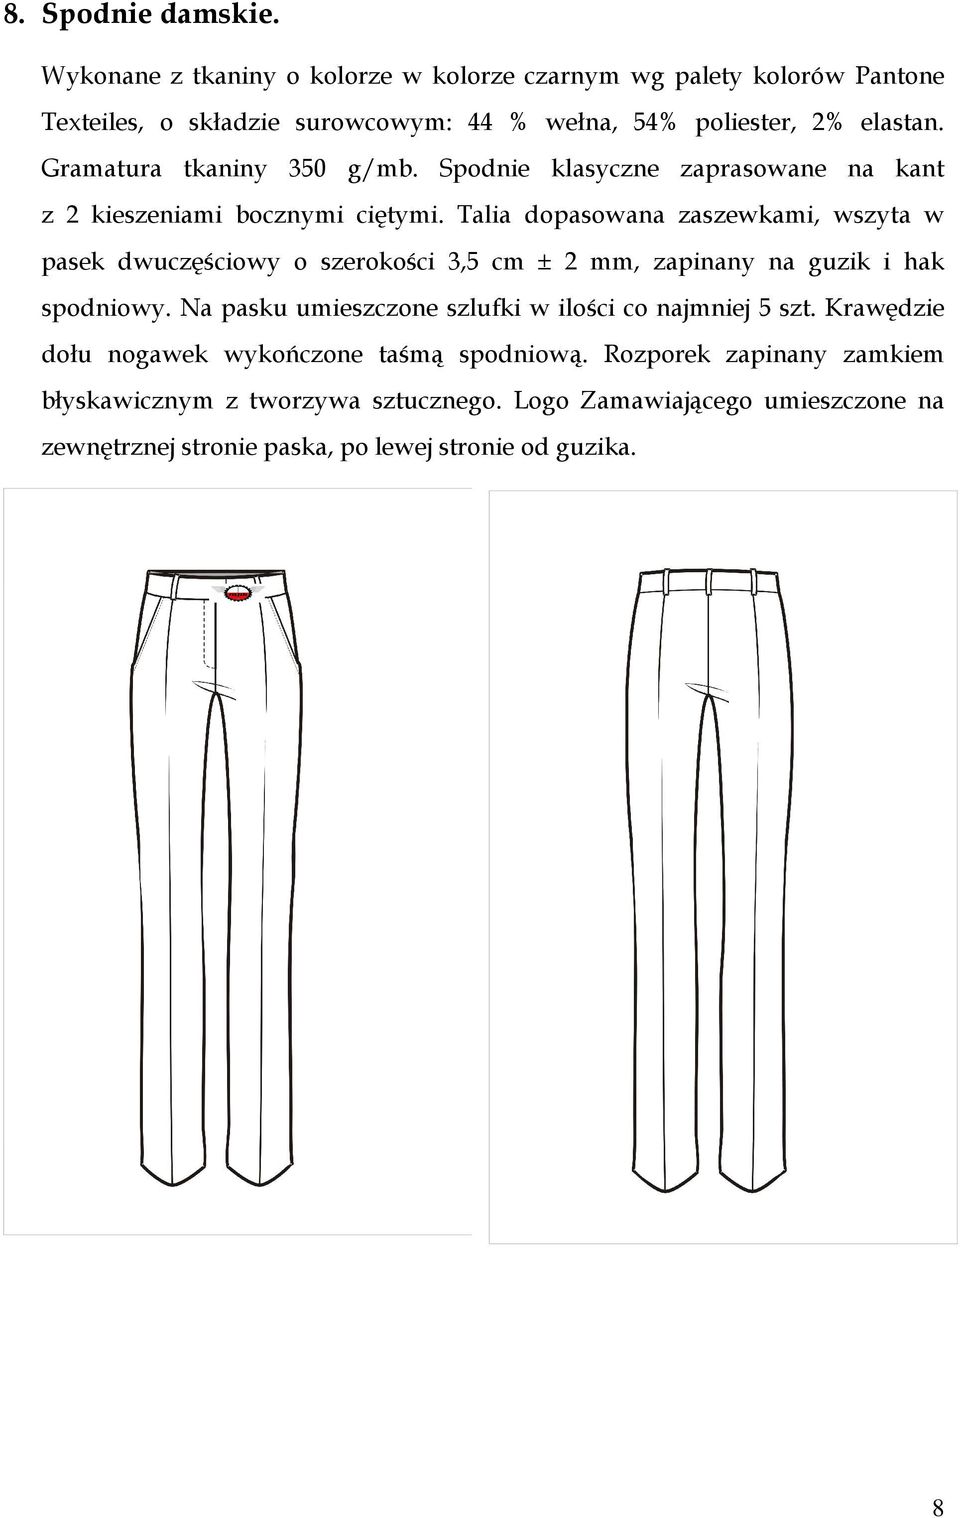 Gramatura tkaniny 350 g/mb. Spodnie klasyczne zaprasowane na kant z 2 kieszeniami bocznymi ciętymi.